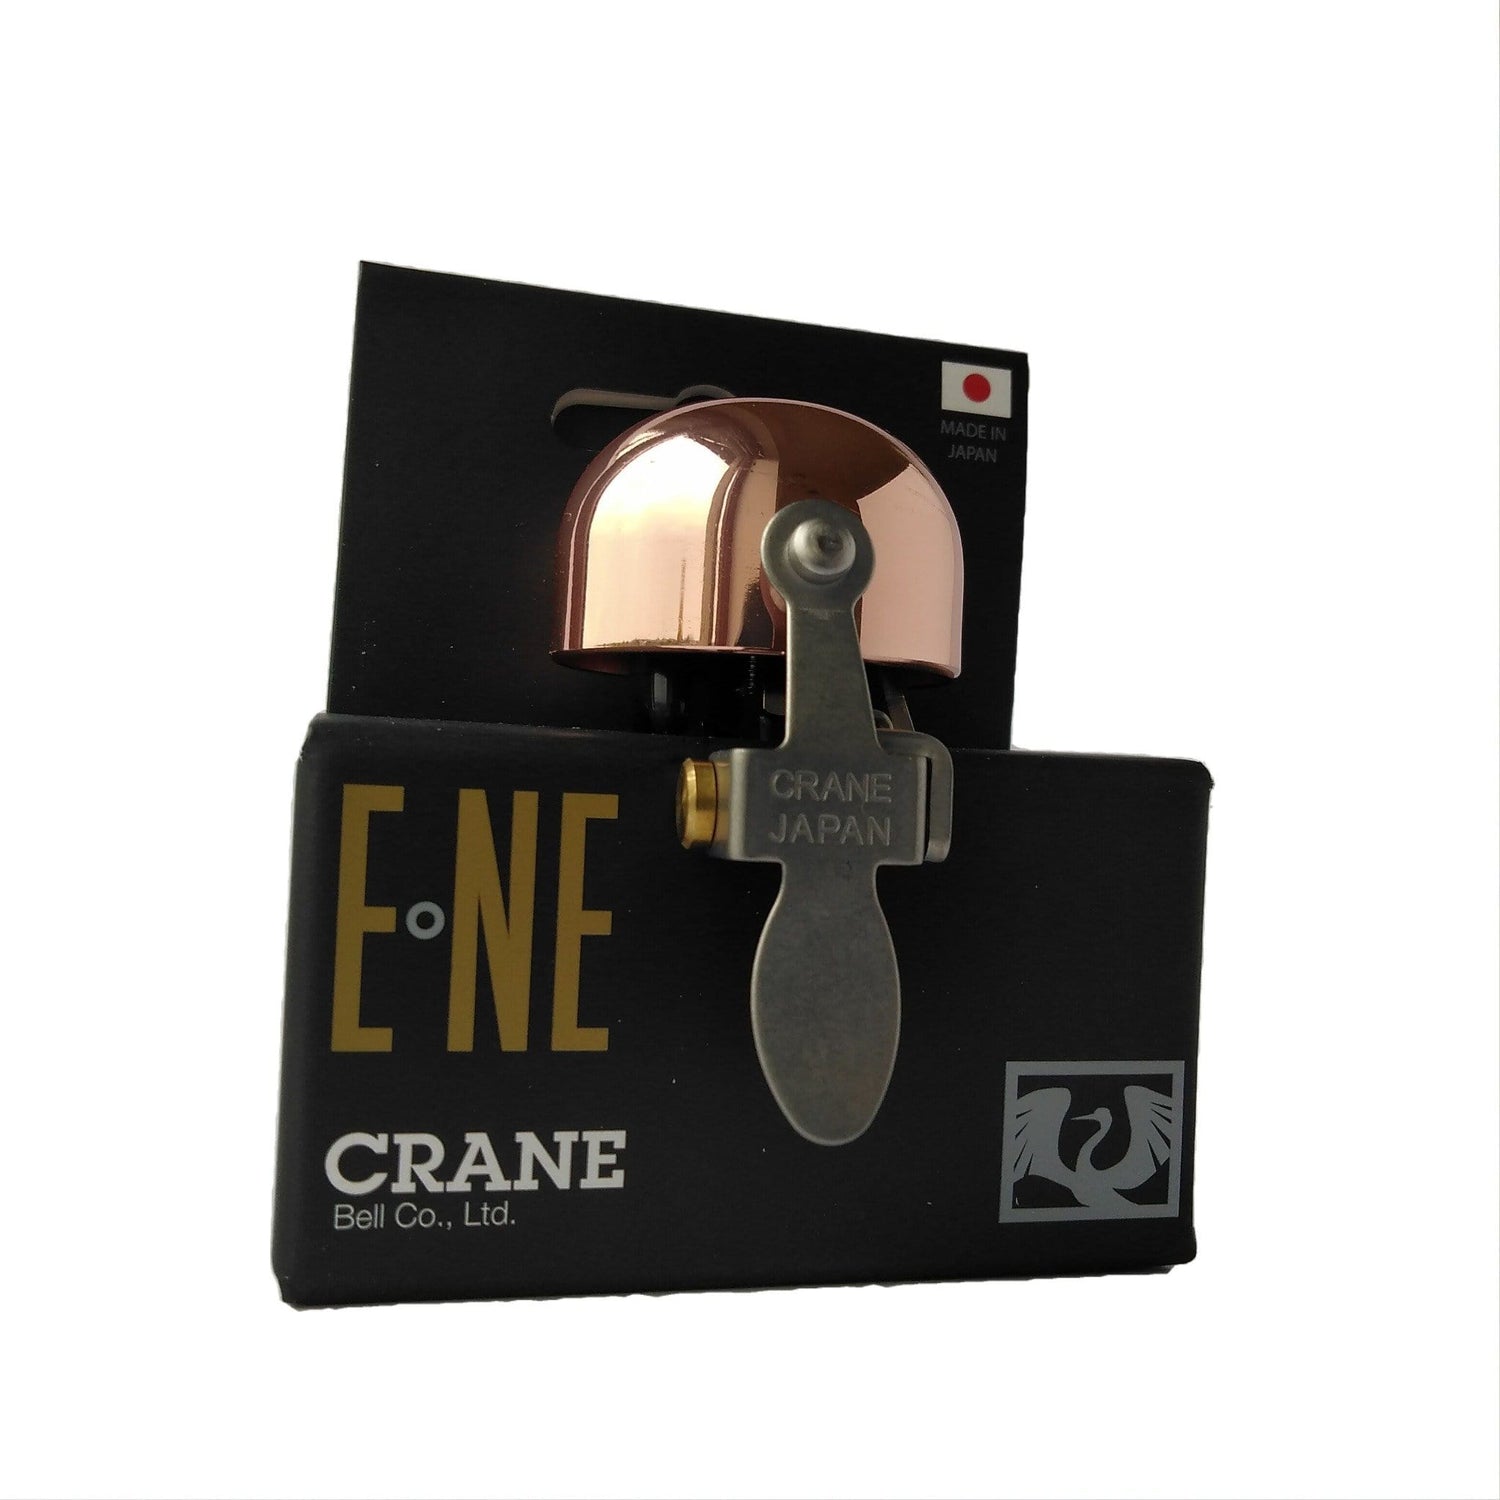 Copper E-NE Crane bicycle bell in retail box